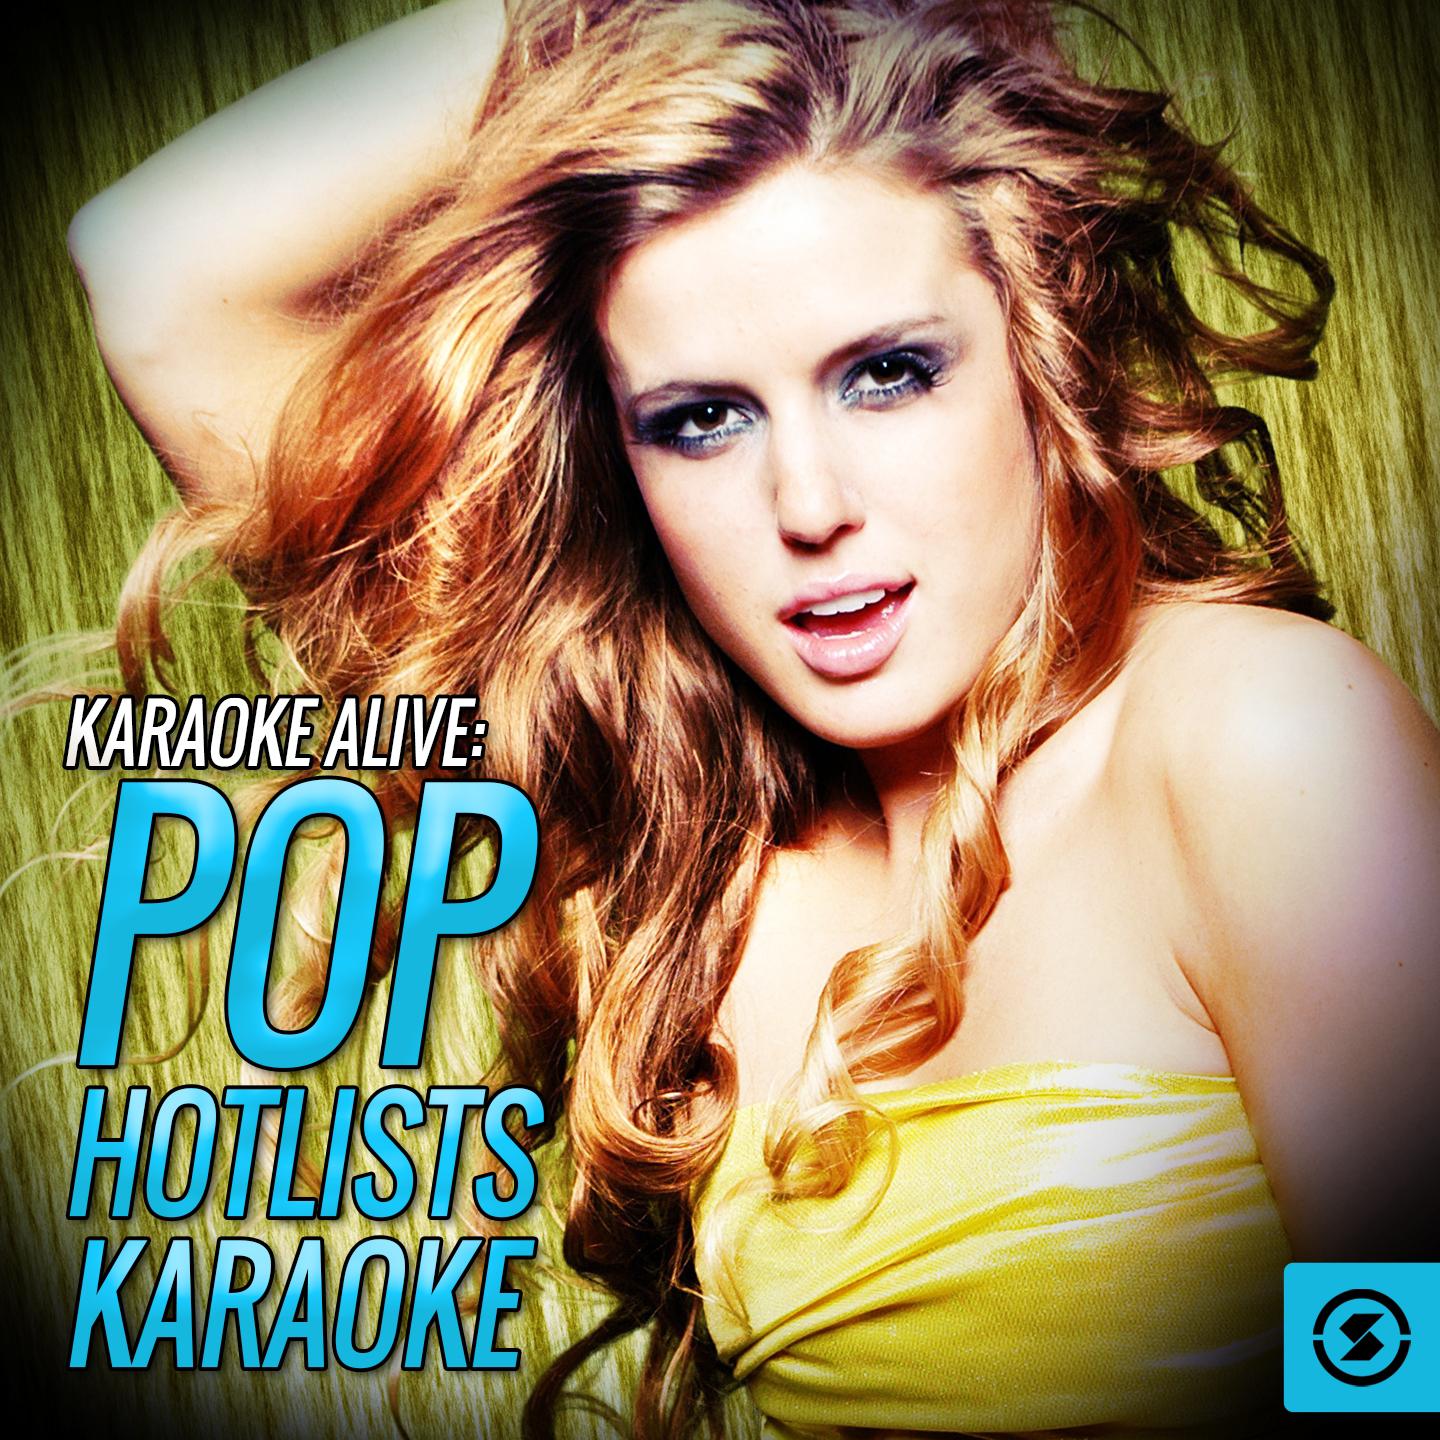 Karaoke Alive: Pop Hotlists Karaoke